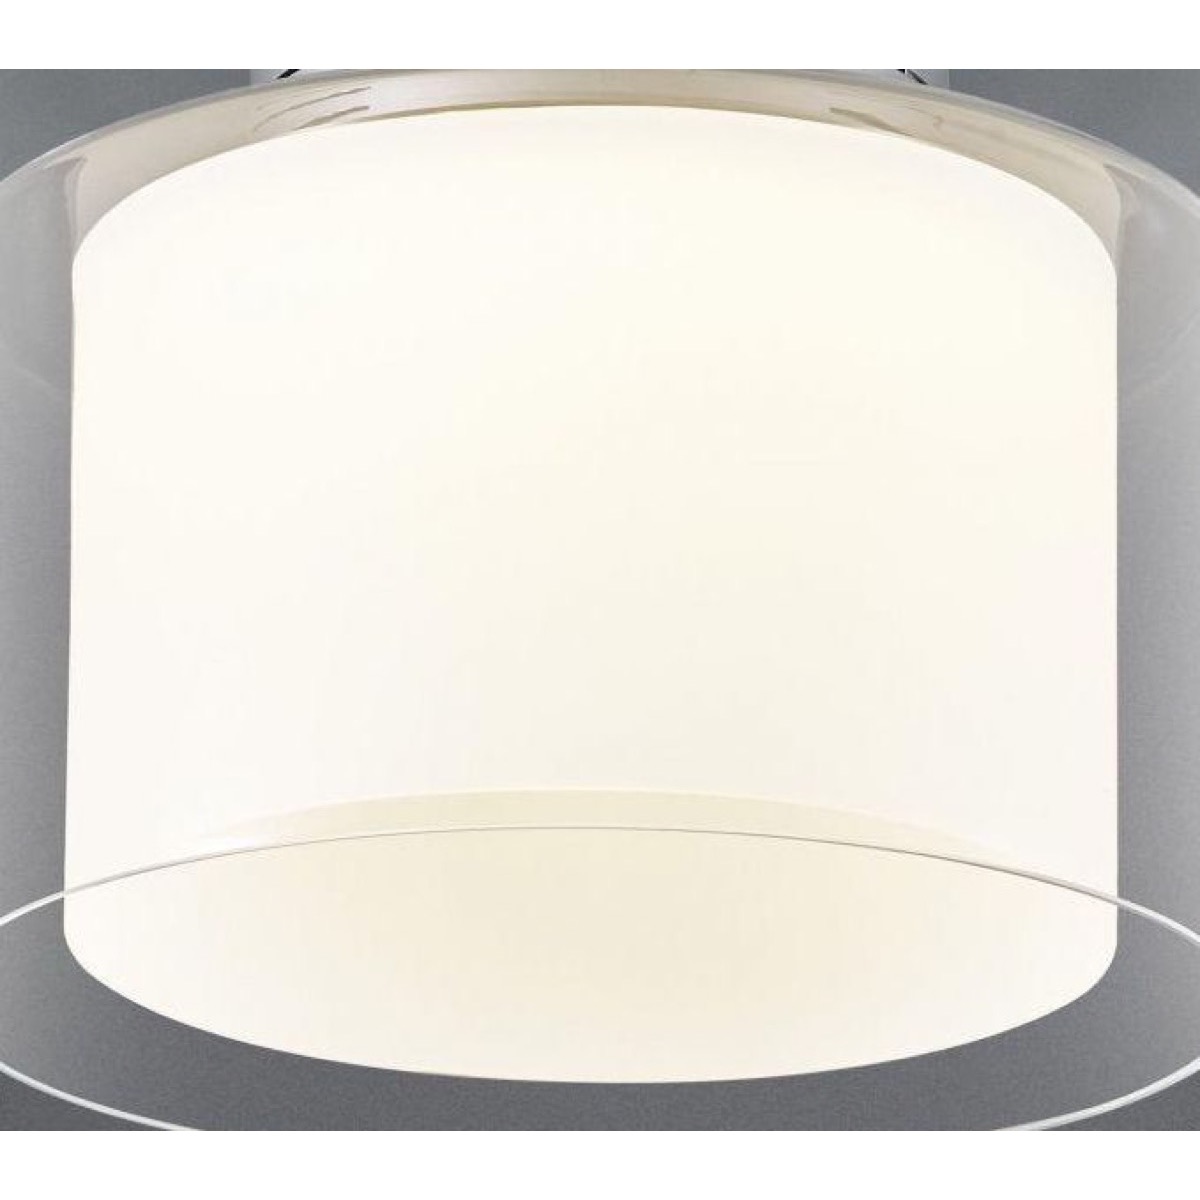 BANKAMP Leuchtenmanufaktur - 28.0124 - Acryl-Innenglas zur GRAND mit 20 cm